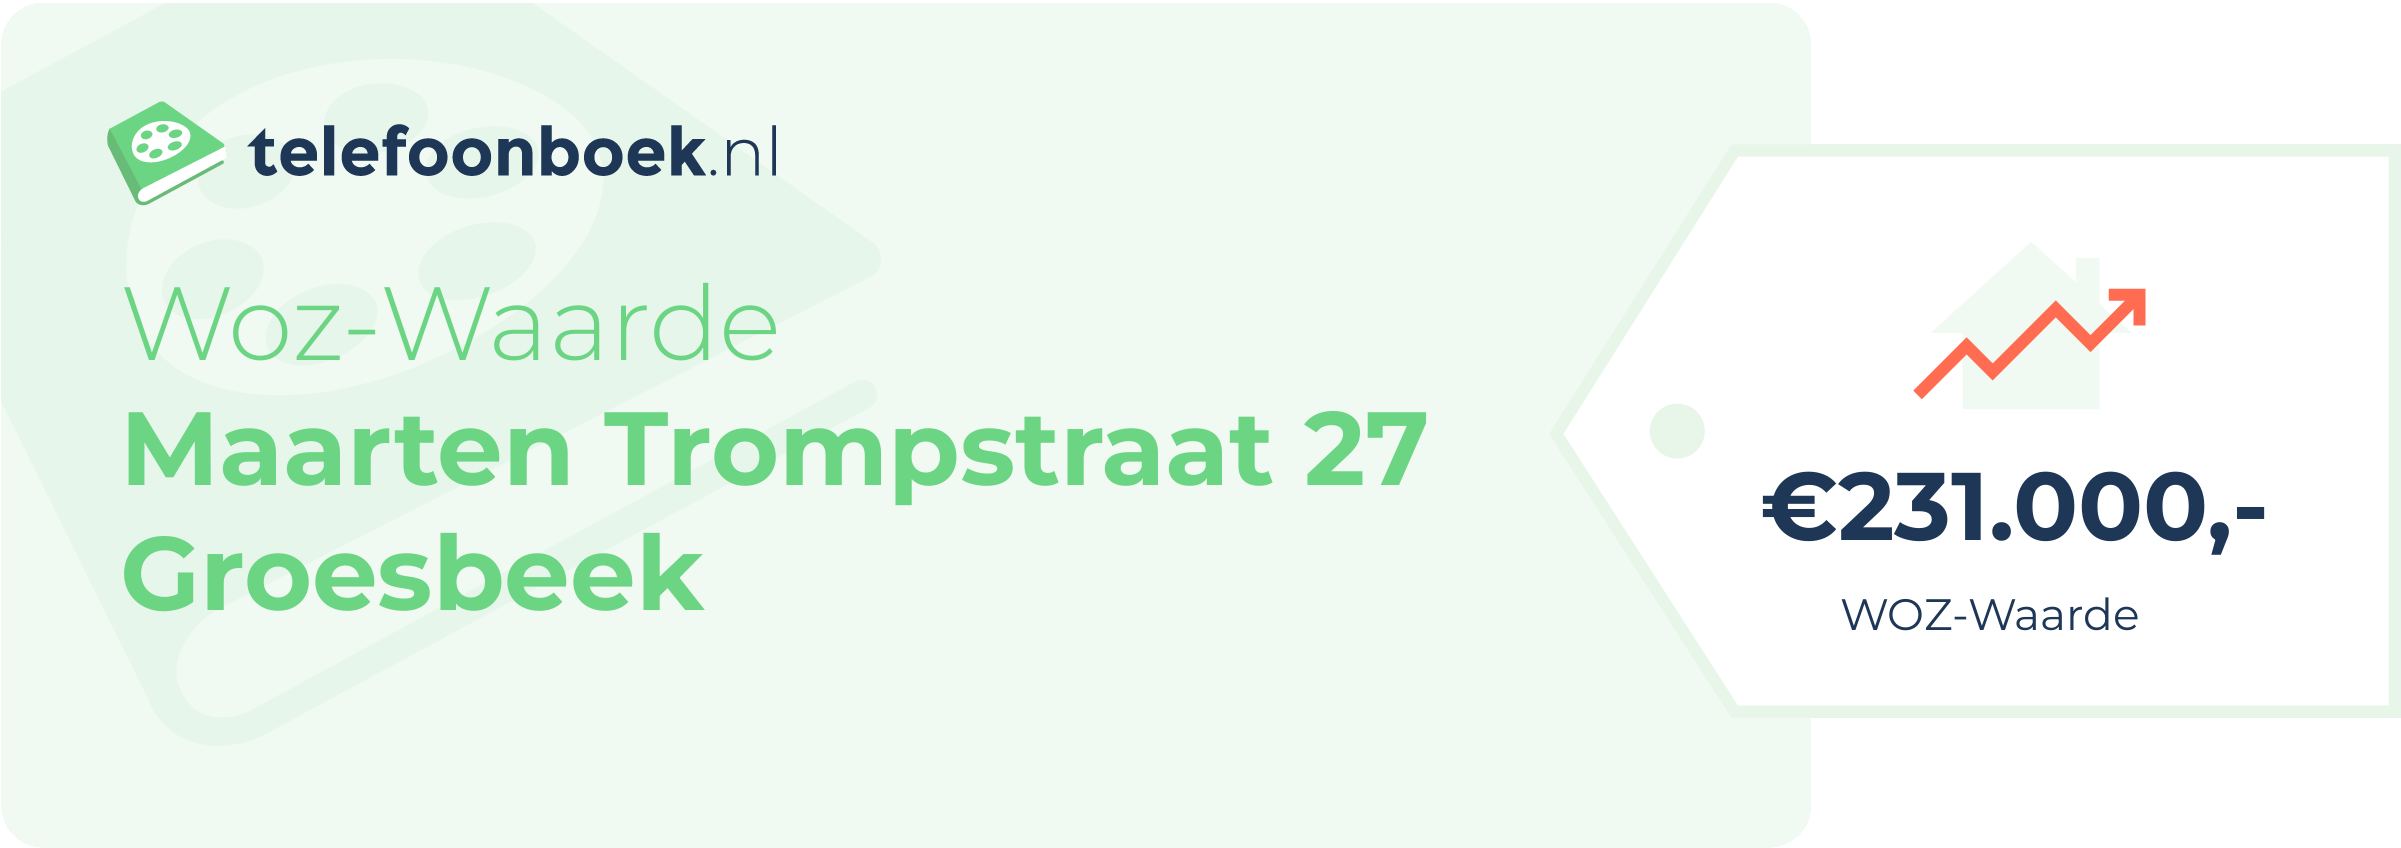 WOZ-waarde Maarten Trompstraat 27 Groesbeek